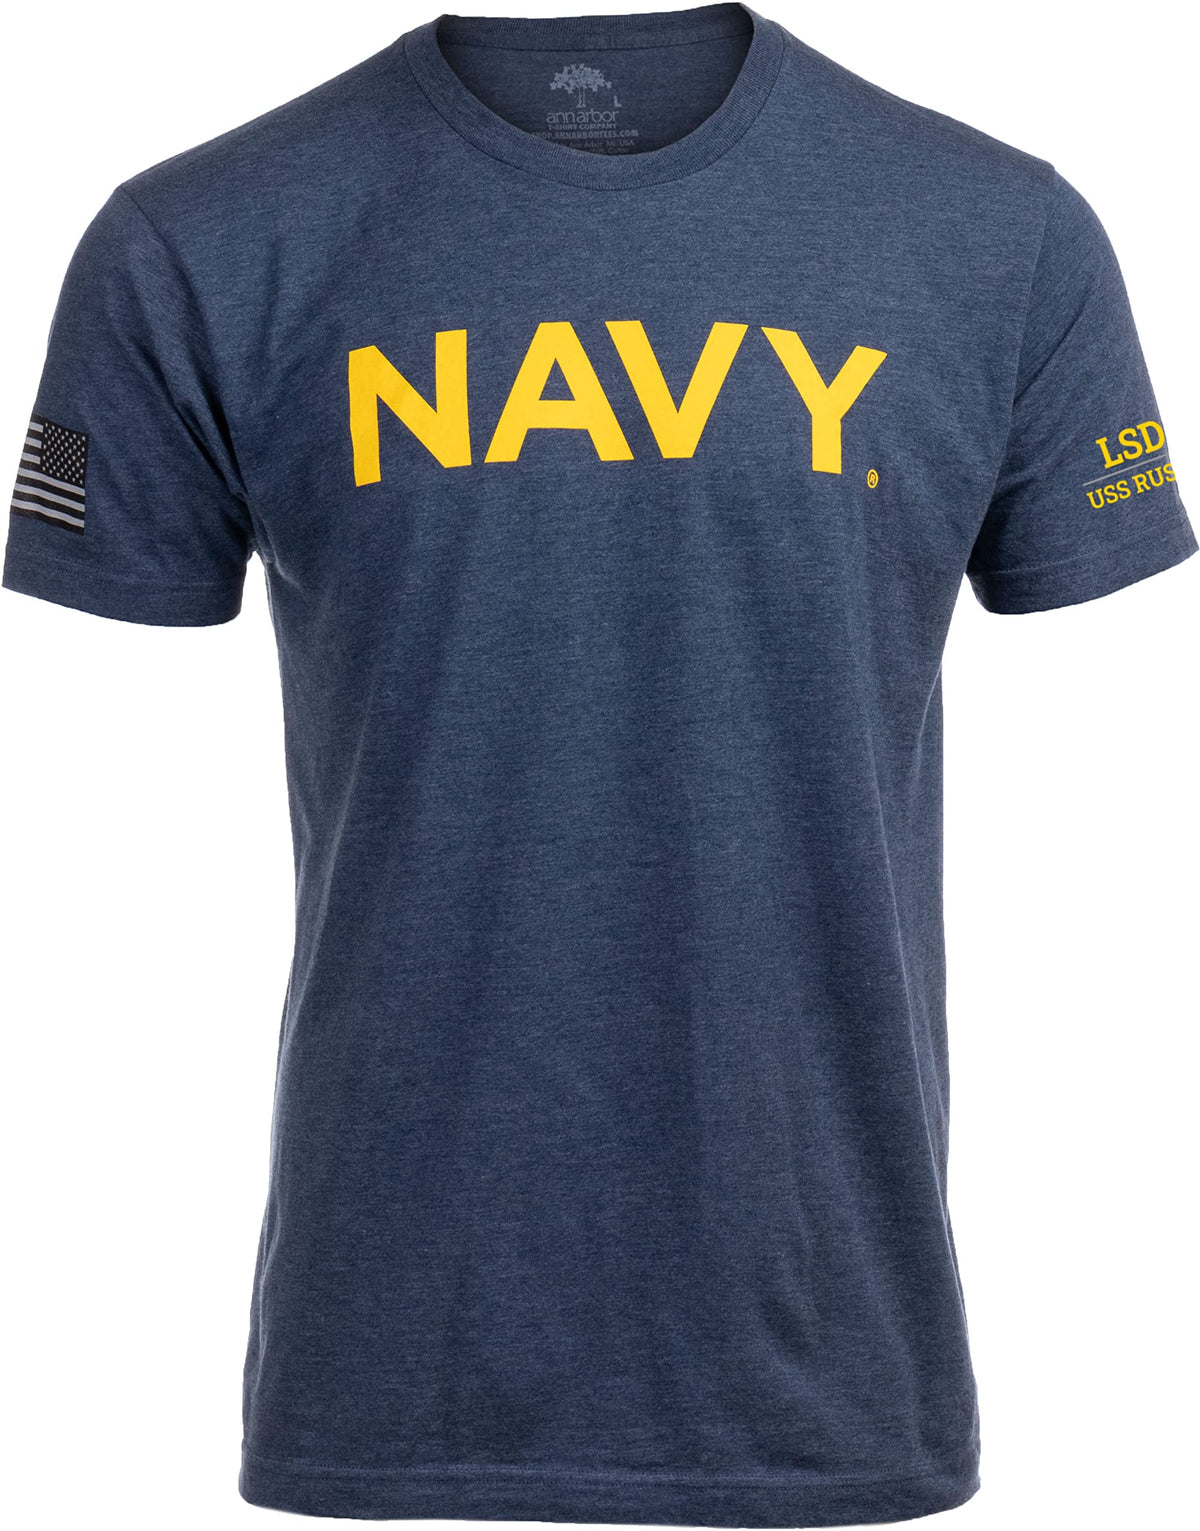 USS Rushmore, LSD-47 | U.S. Navy Sailor Veteran USN United States Naval T-shirt for Men Women